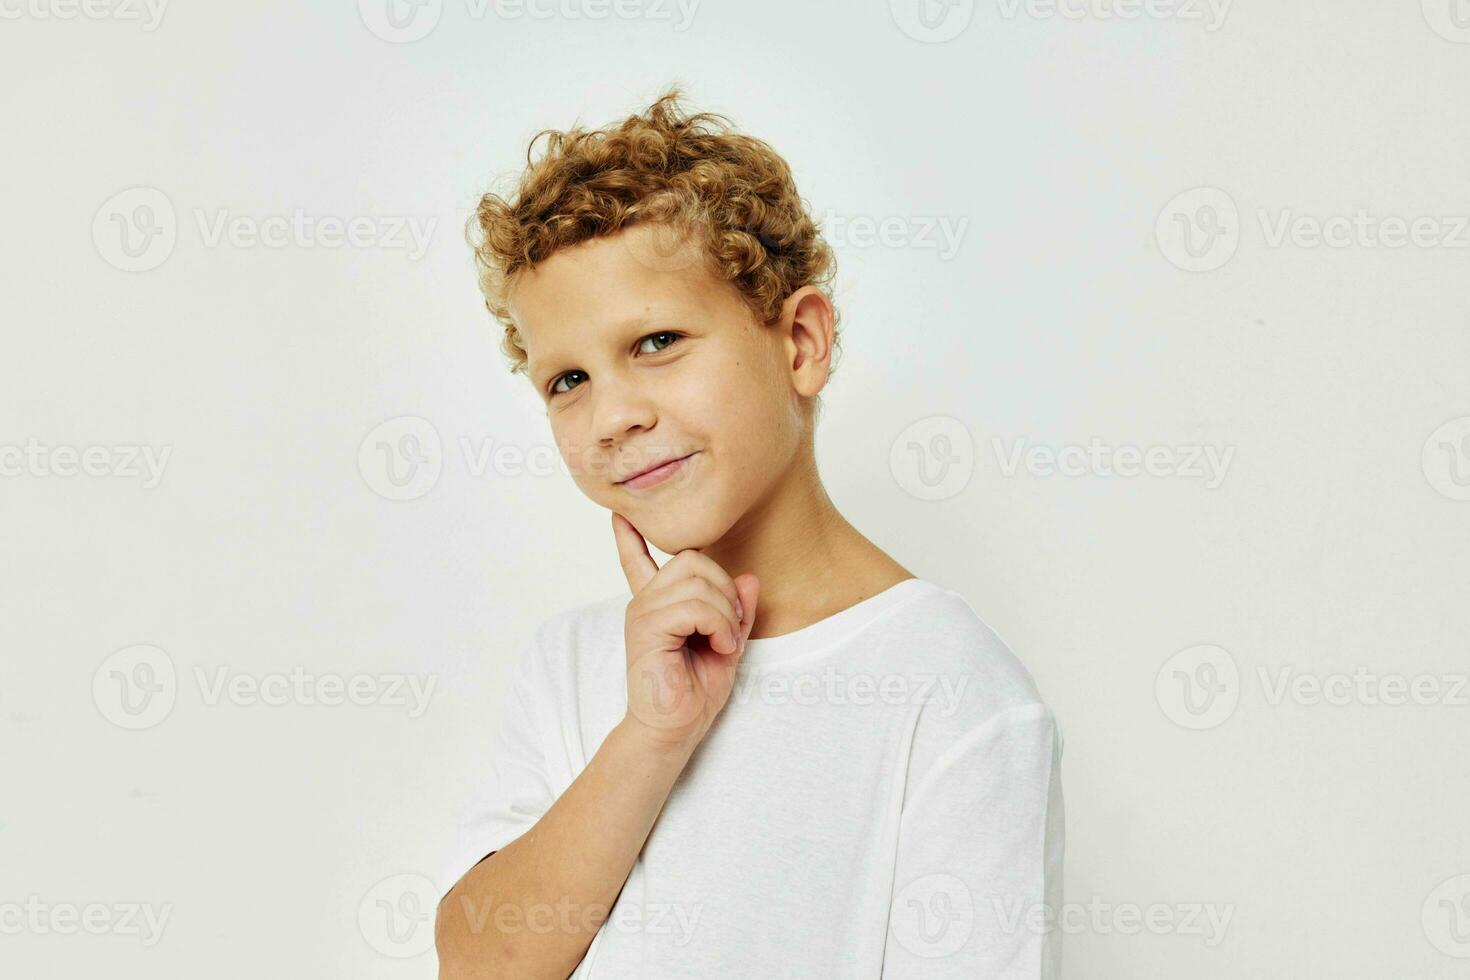 foto do jovem Garoto dentro uma branco camiseta posando Diversão infância inalterado